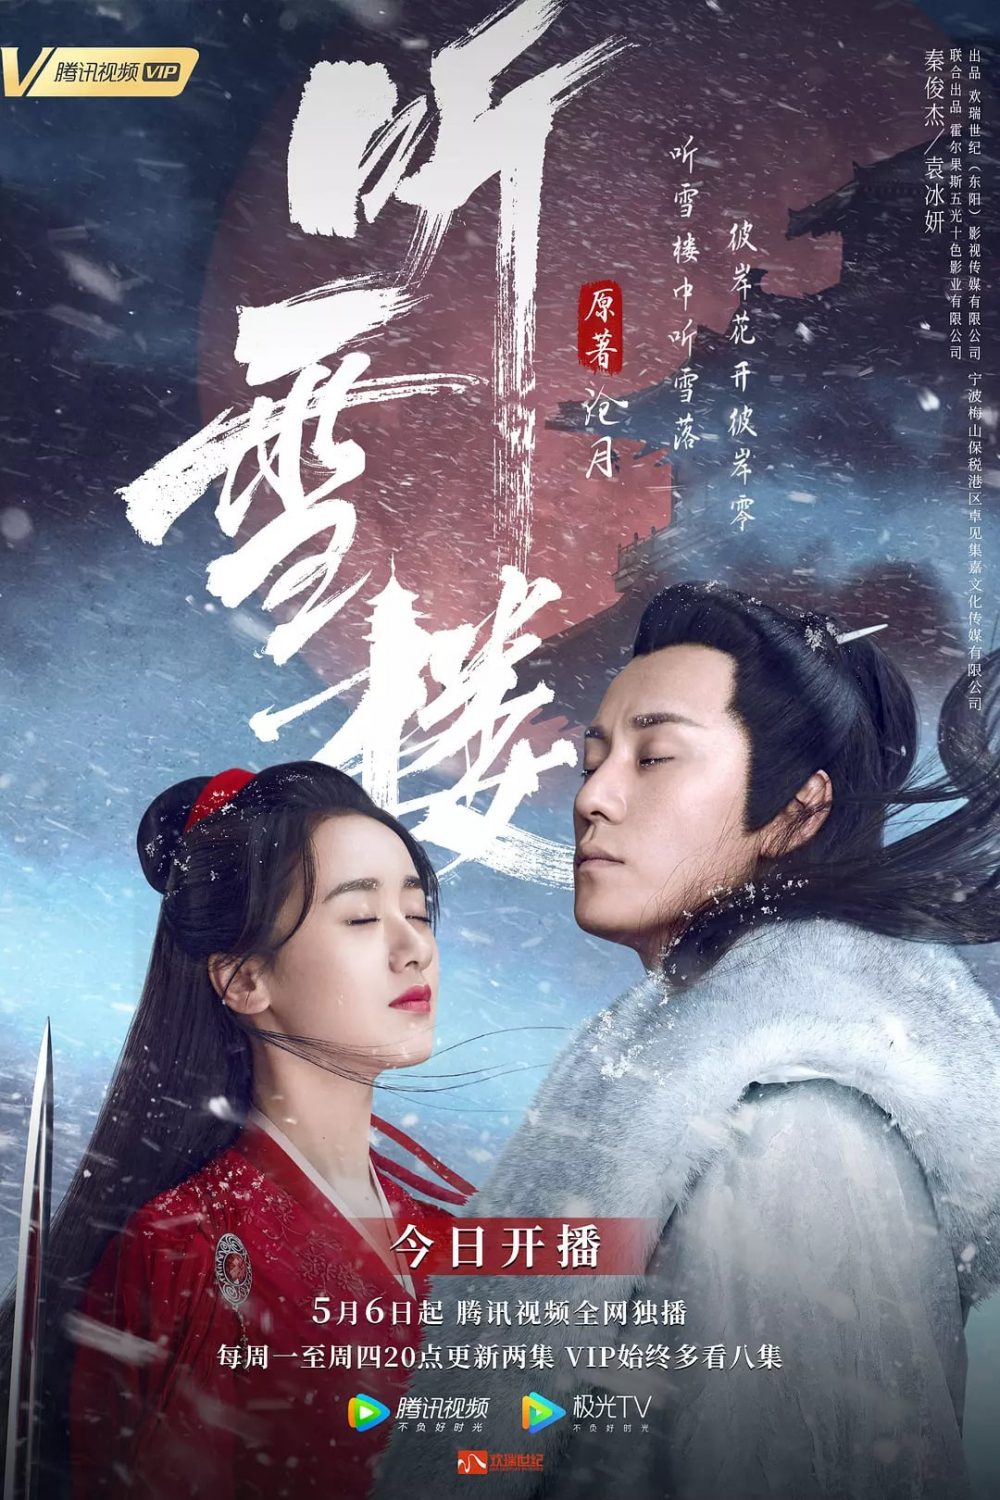 Phim đem Tần Tuấn Kiệt đóng: Thính tuyết lâu - Listening Snow Tower (2019)